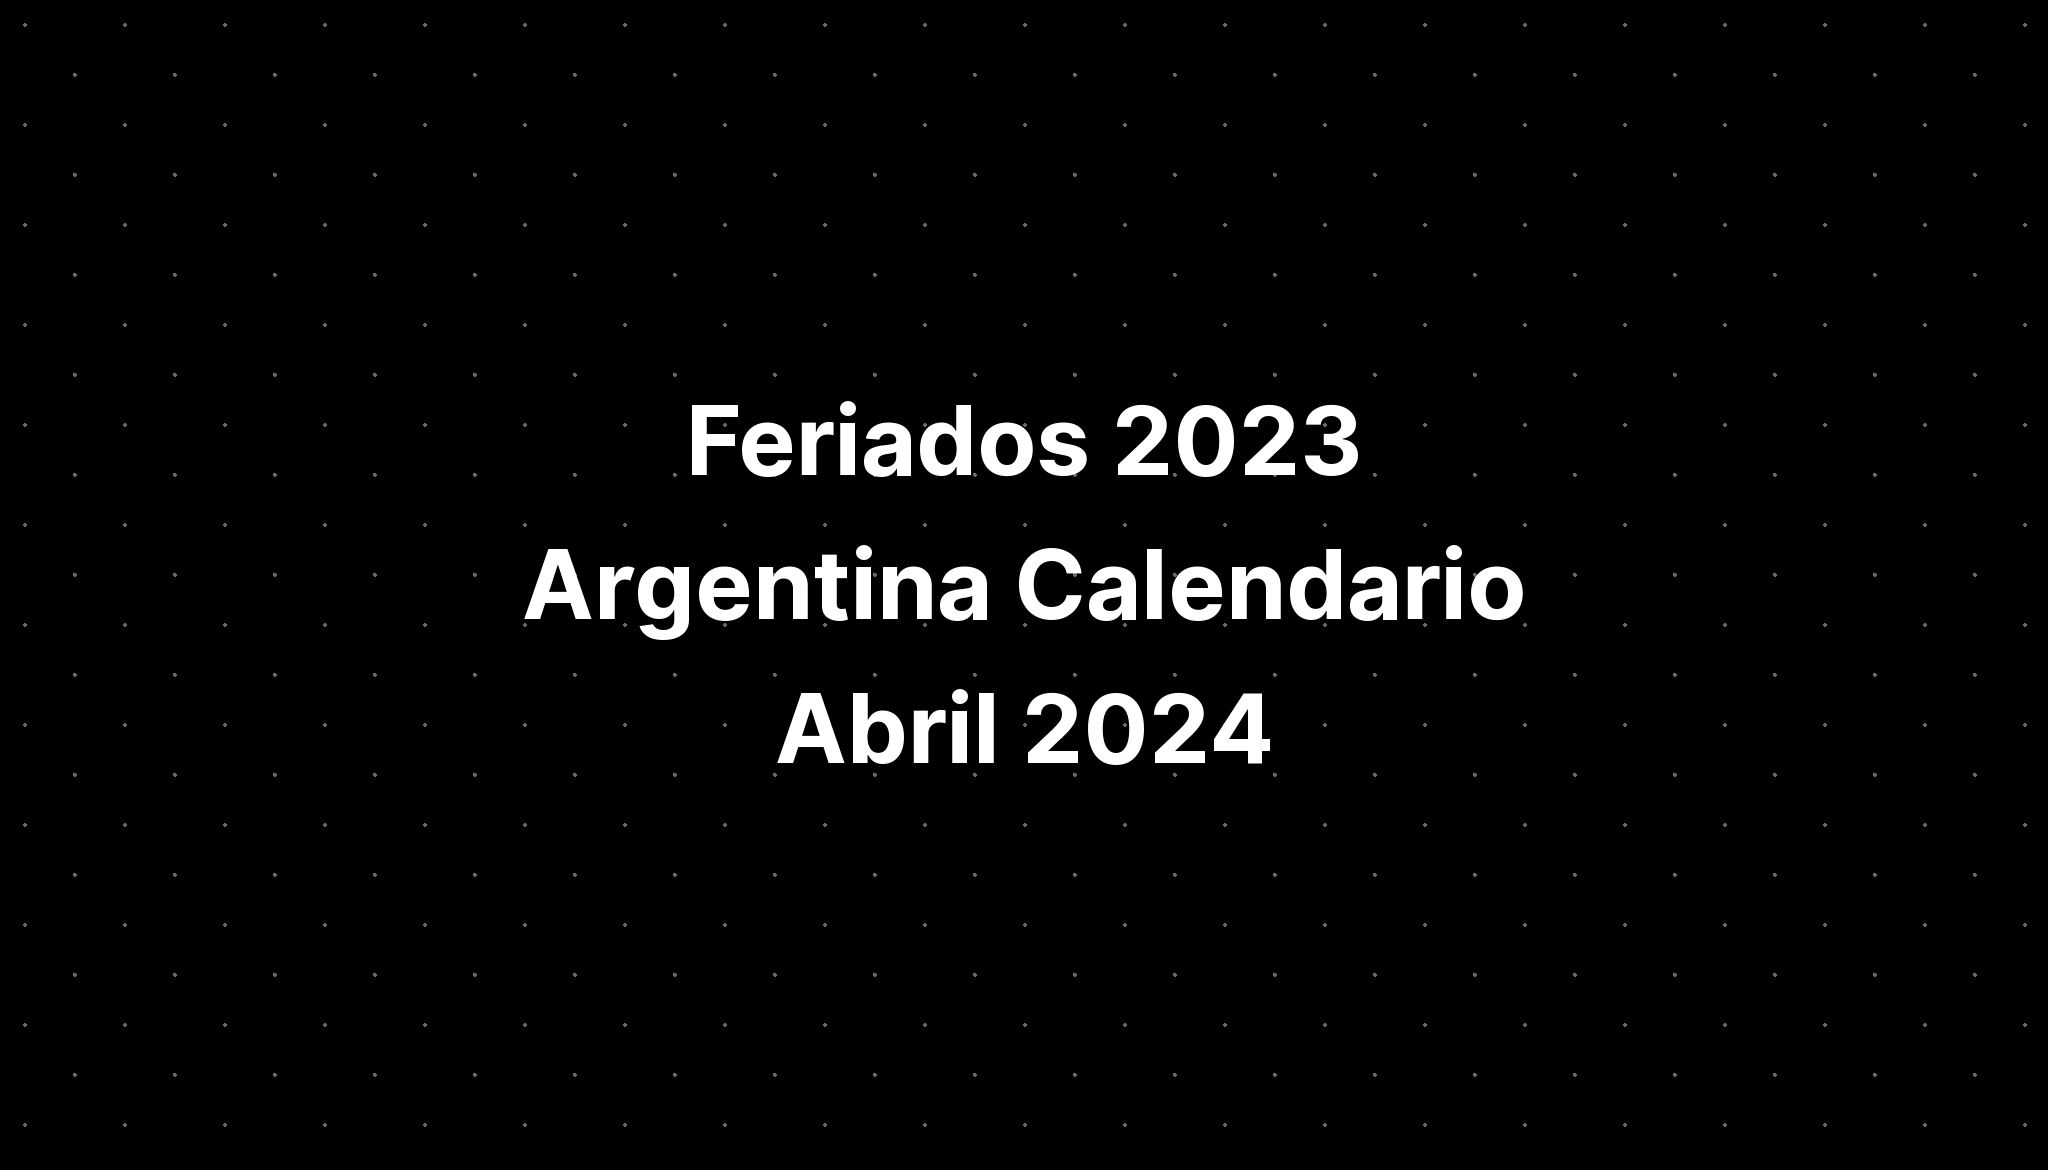 Feriados 2023 Argentina Calendario Abril 2024 IMAGESEE